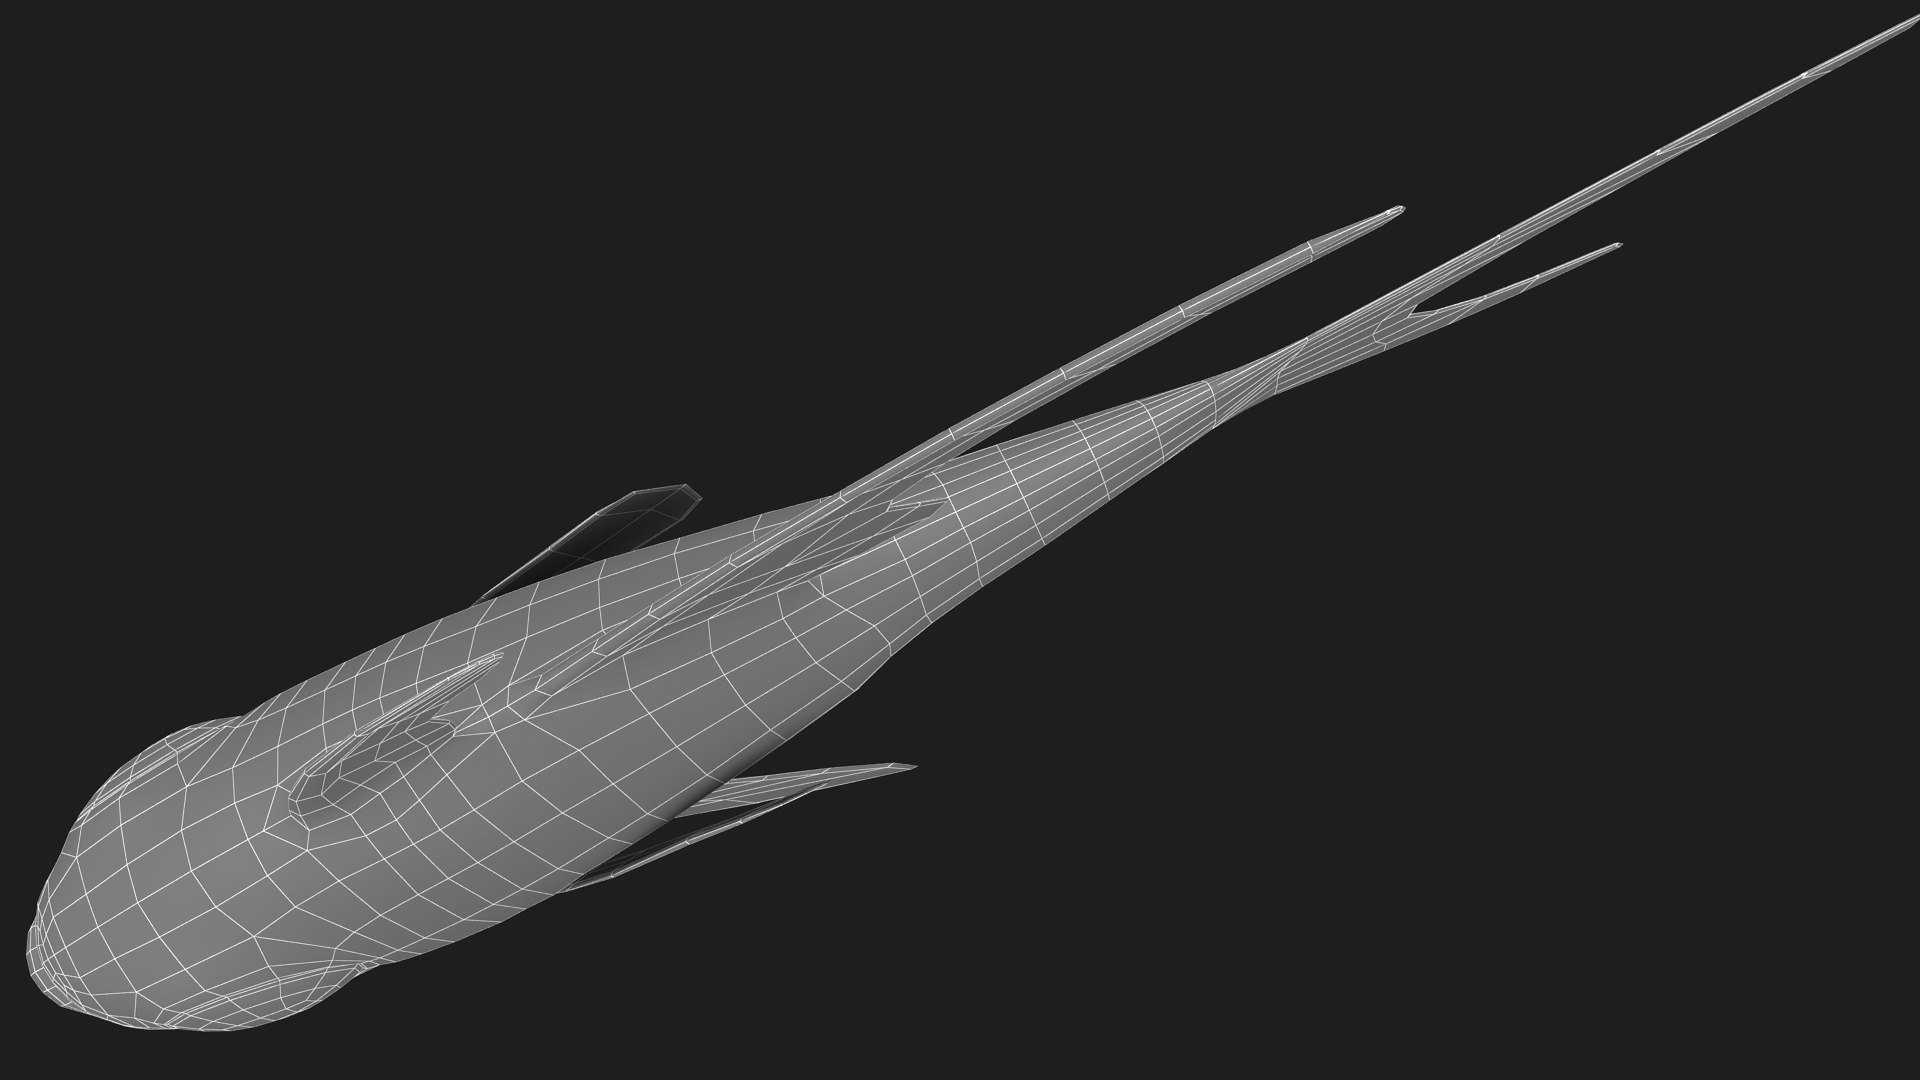 3D fish creel net - TurboSquid 1422392